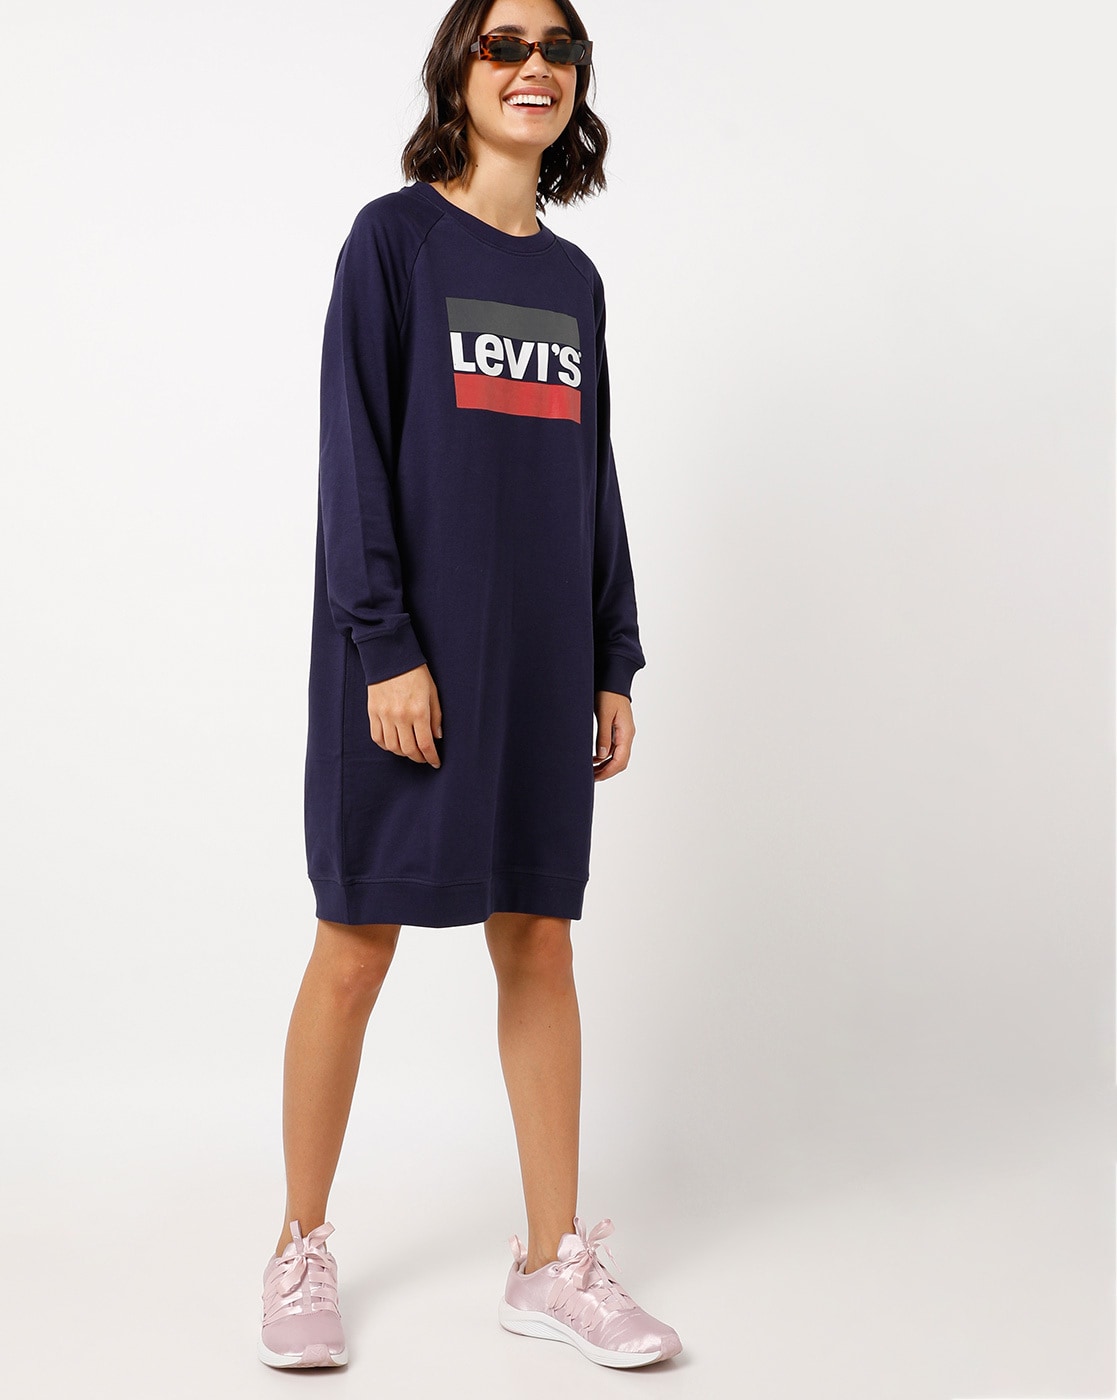 levi's dresses online